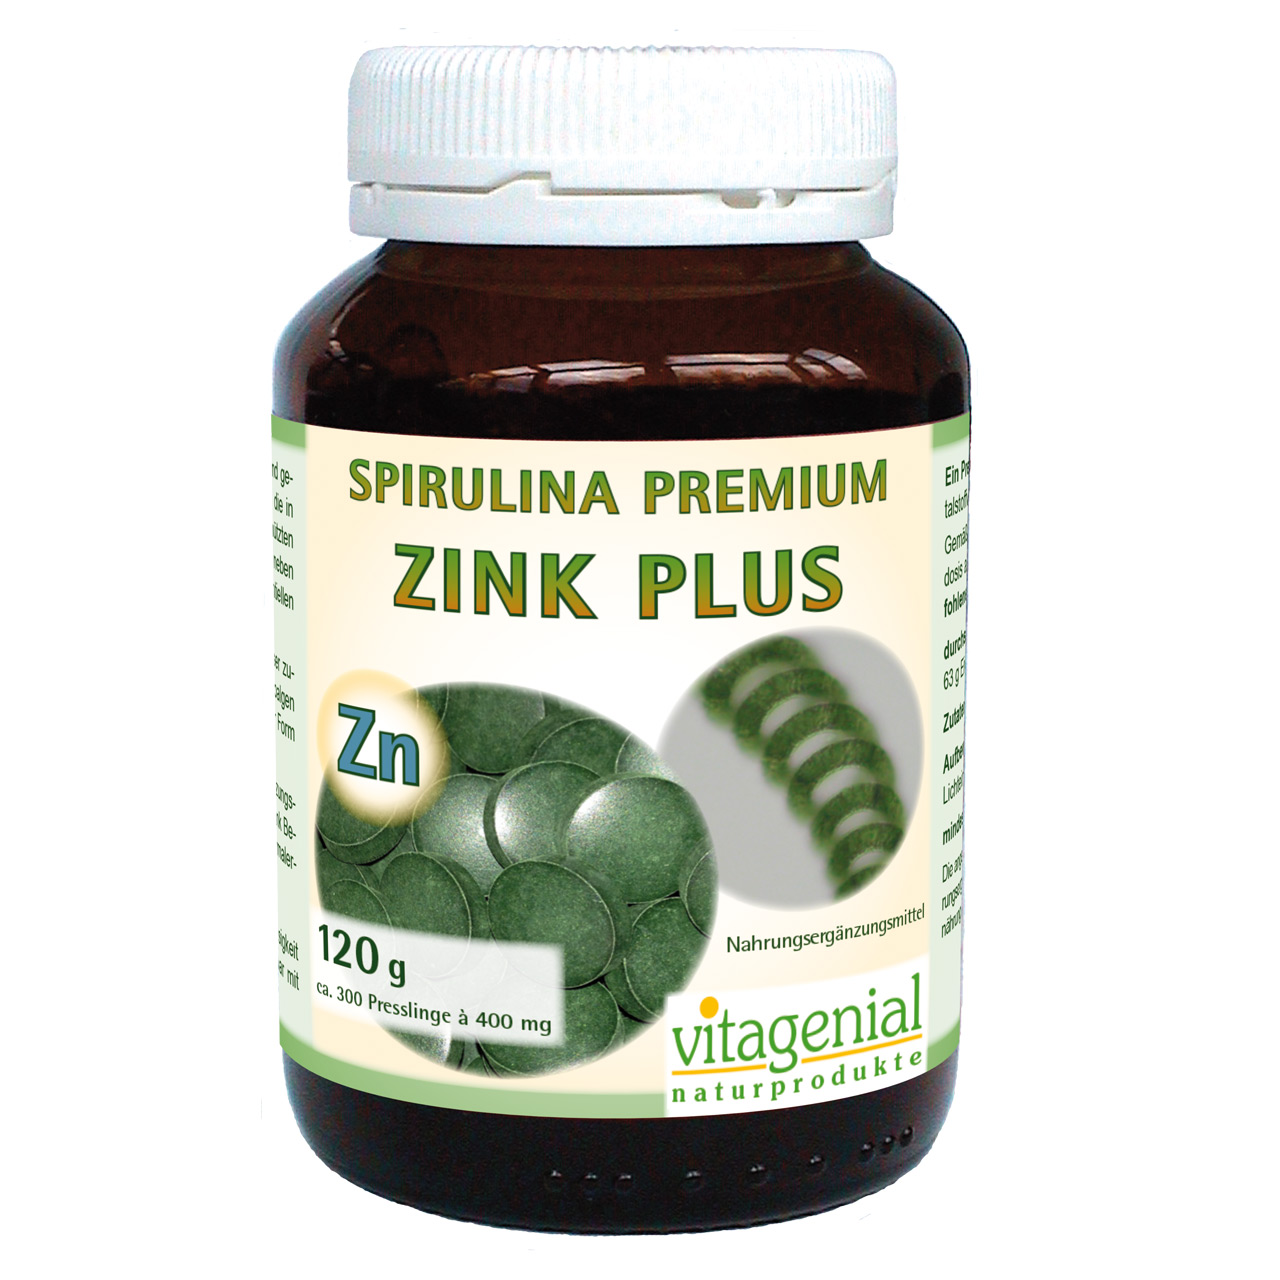 Vitagenial Spirulina Premium Zink Plus in 120 Gramm Version beinhaltet 300 Presslinge